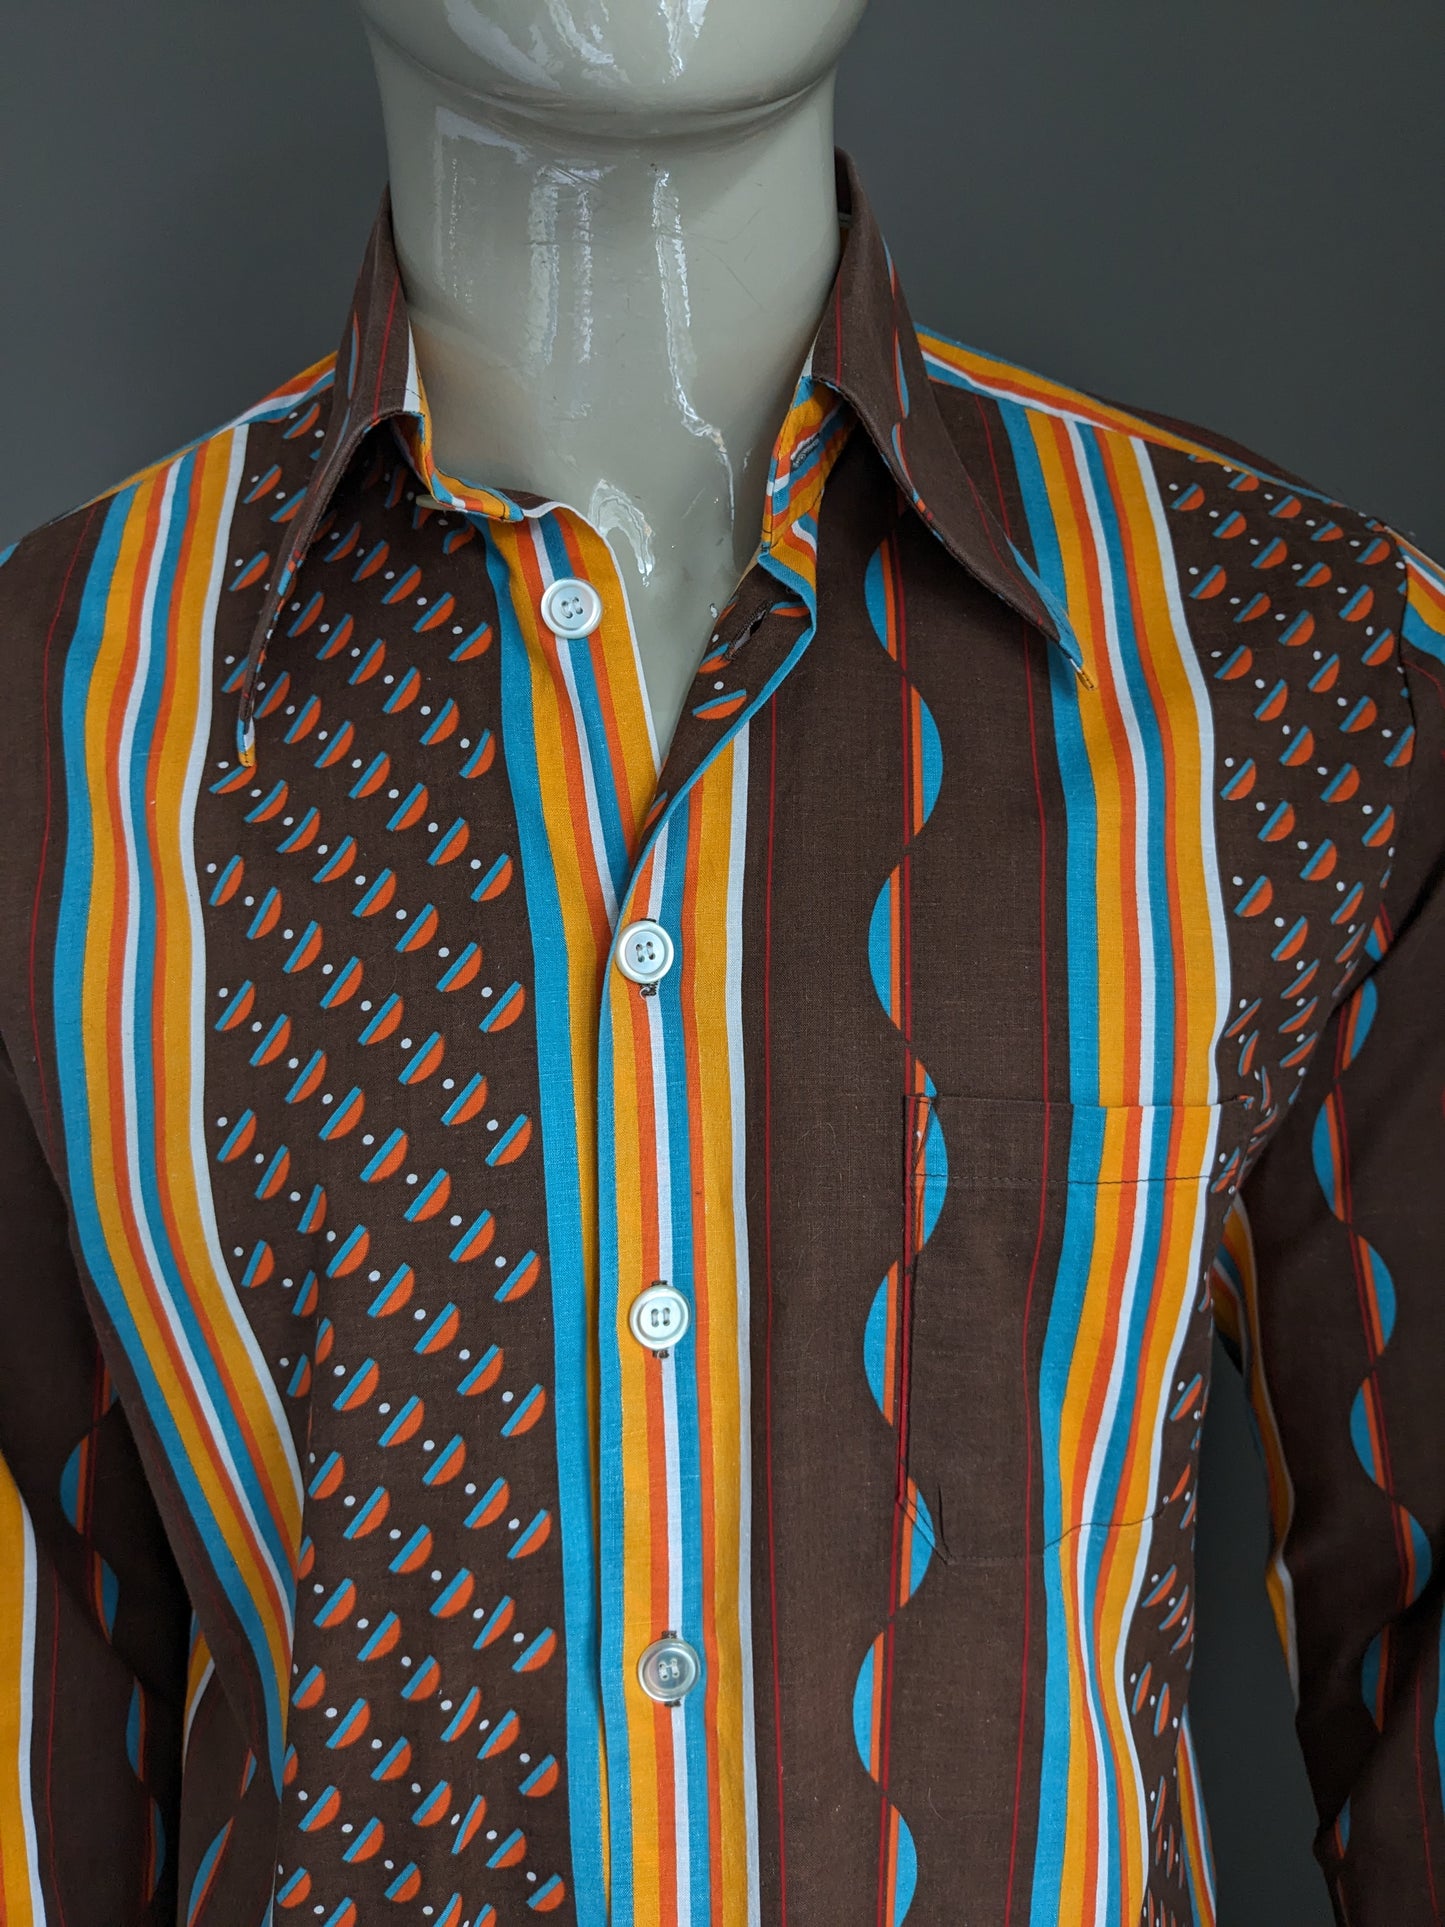 Vintage Trend 70er Hemd mit Punktkragen. Brown Orange Blue Print. Größe L.